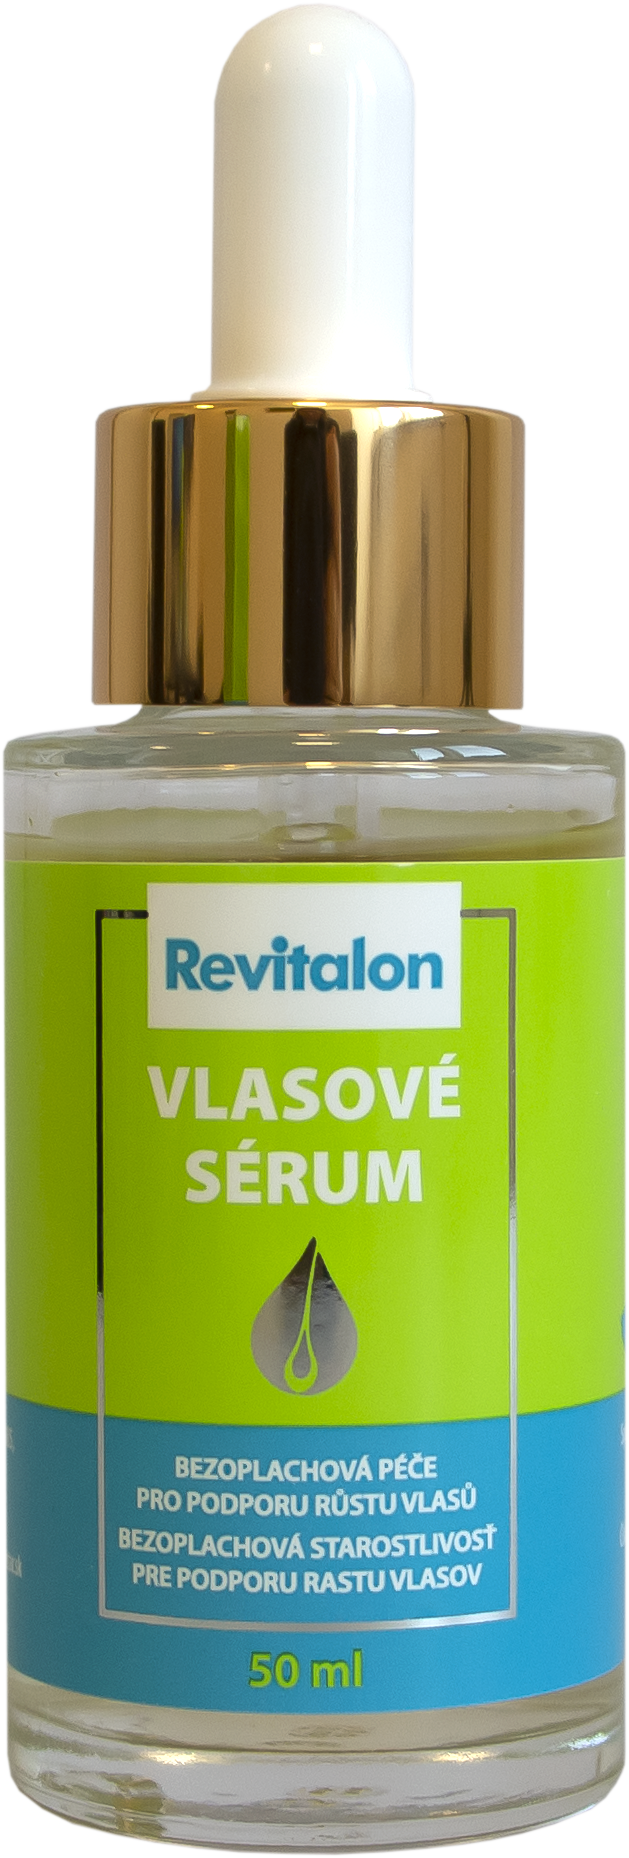 revitalon-vlasove-serum_lahvicka_229-kc.png